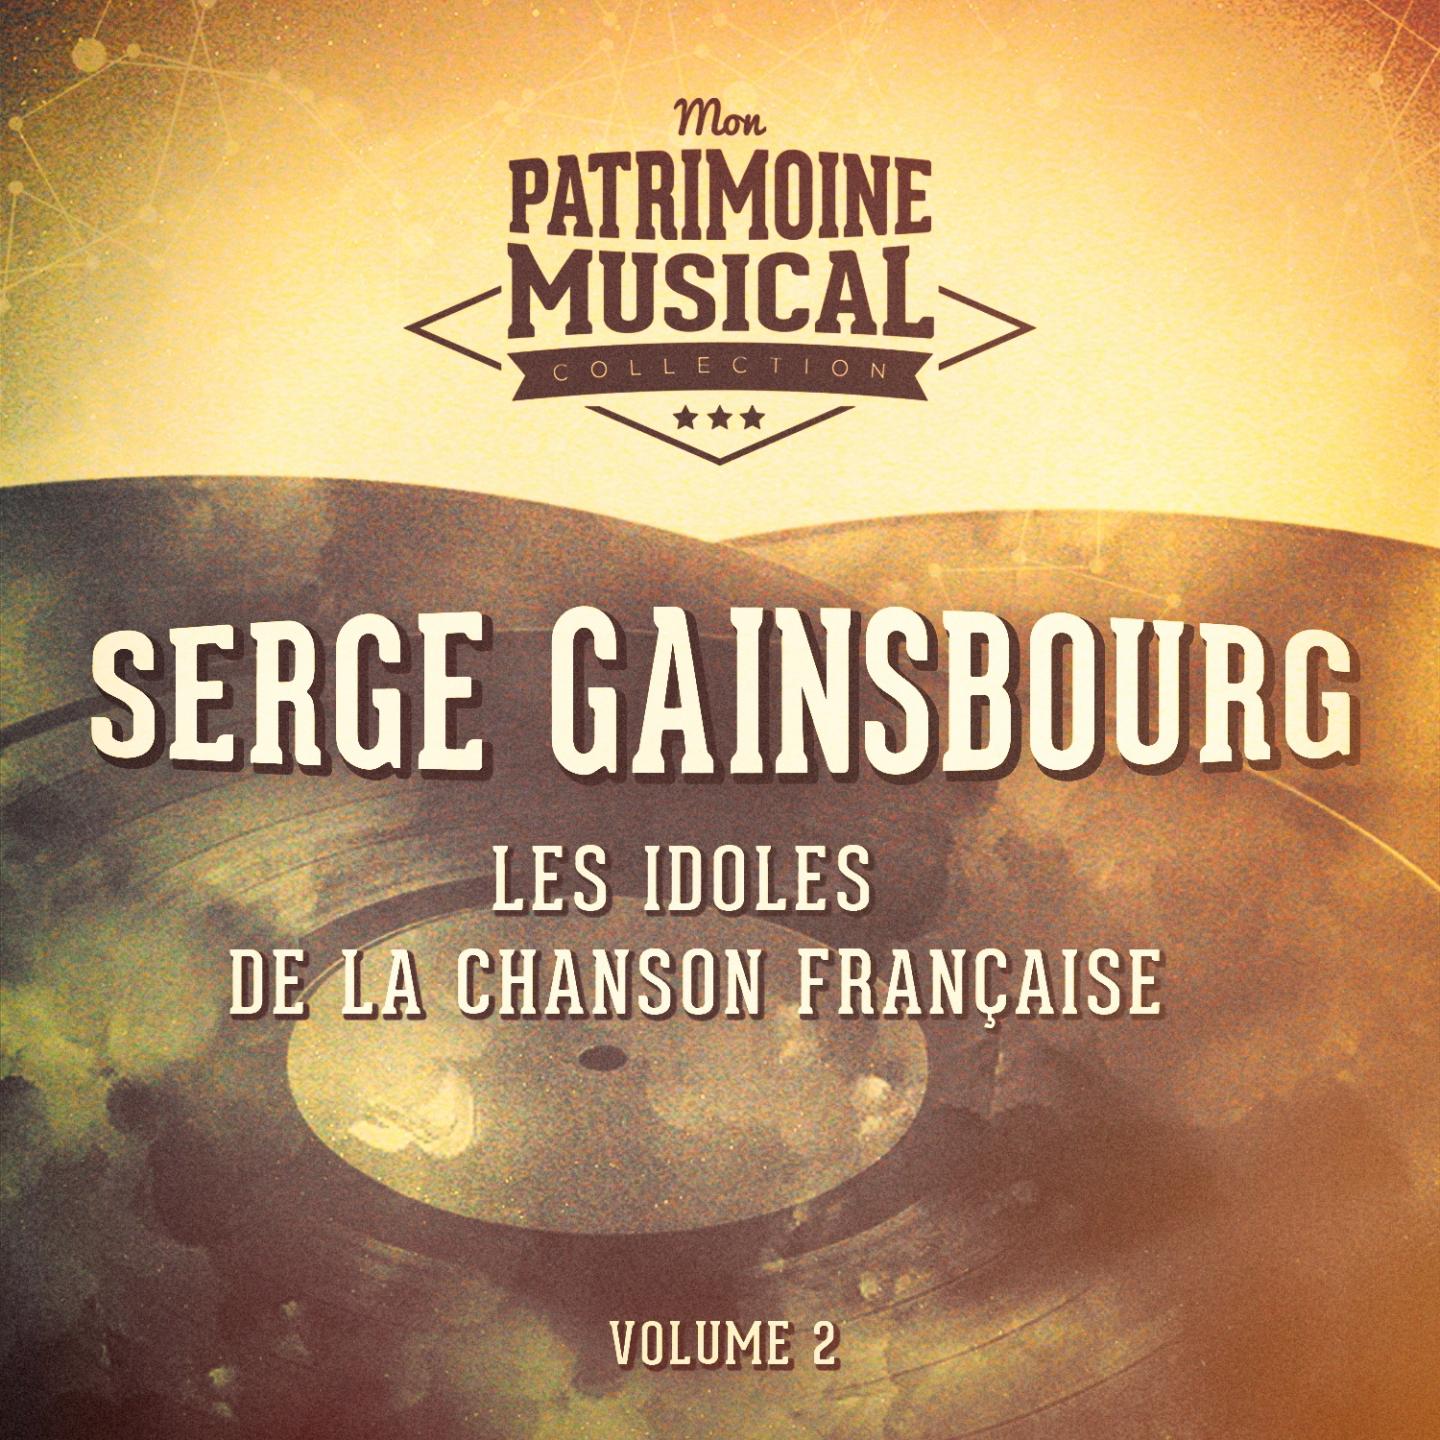 Les idoles de la chanson fran aise : Serge Gainsbourg, Vol. 2